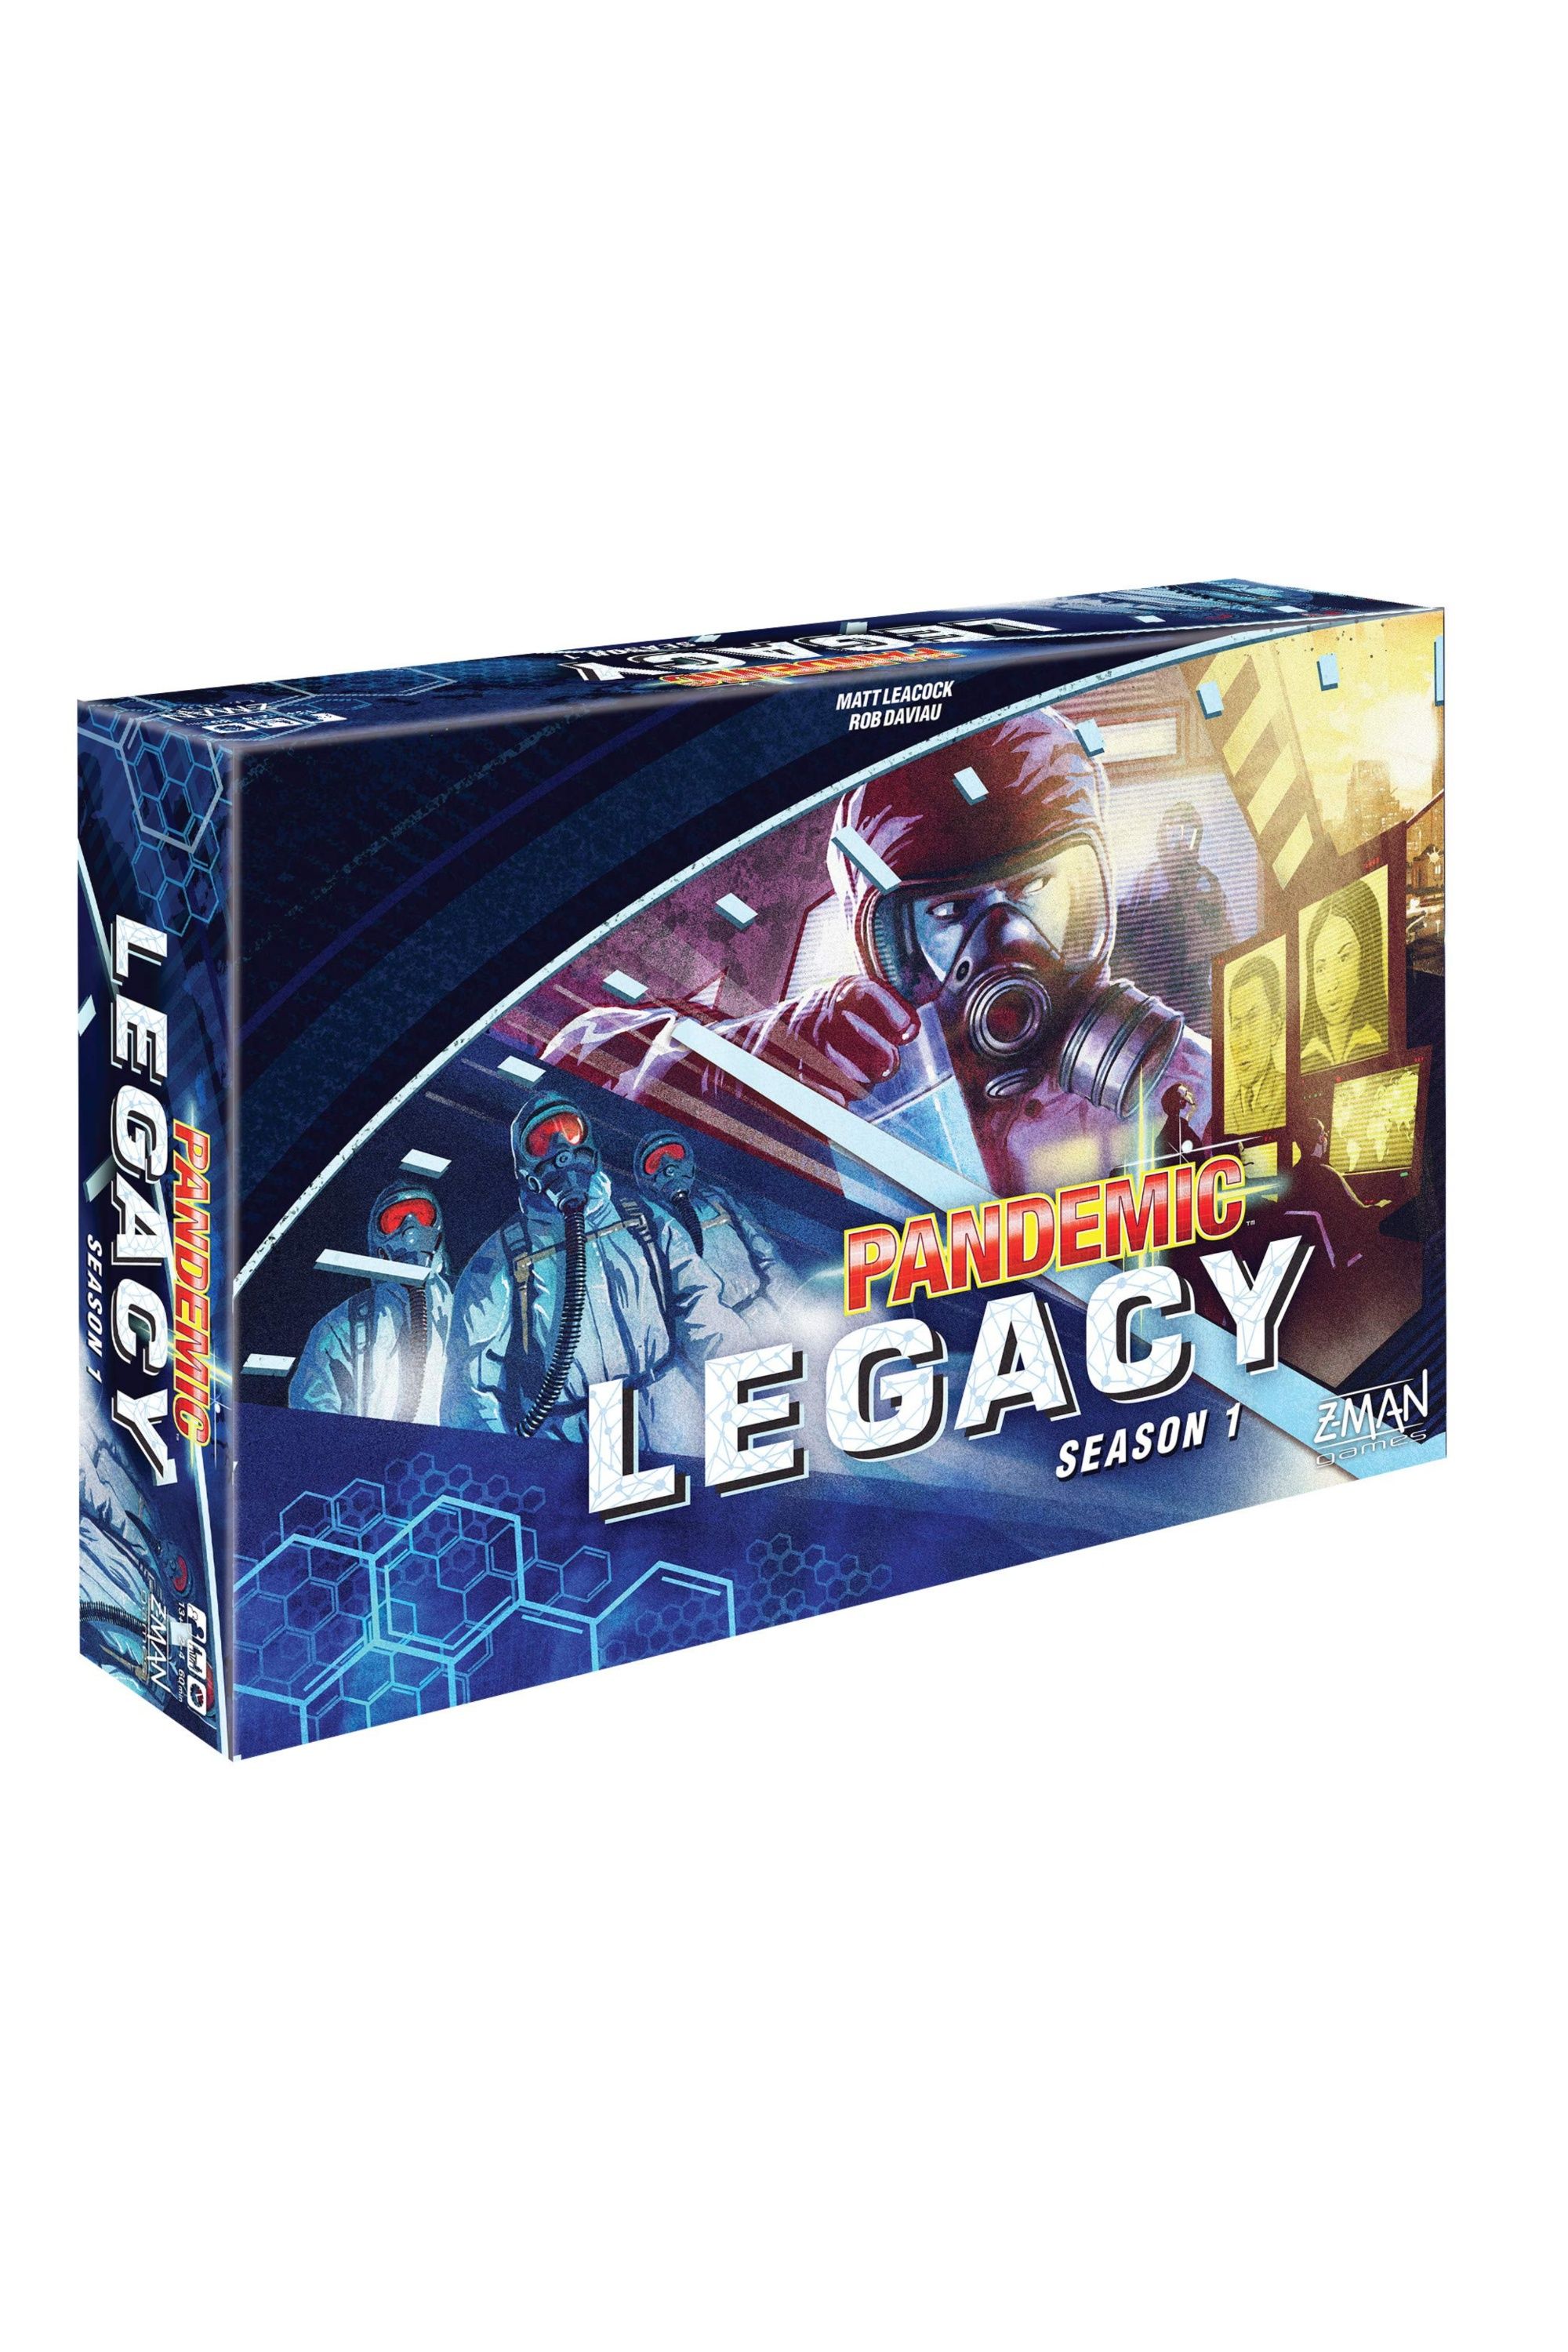 Pandemic Legacy: Season 1 board game box